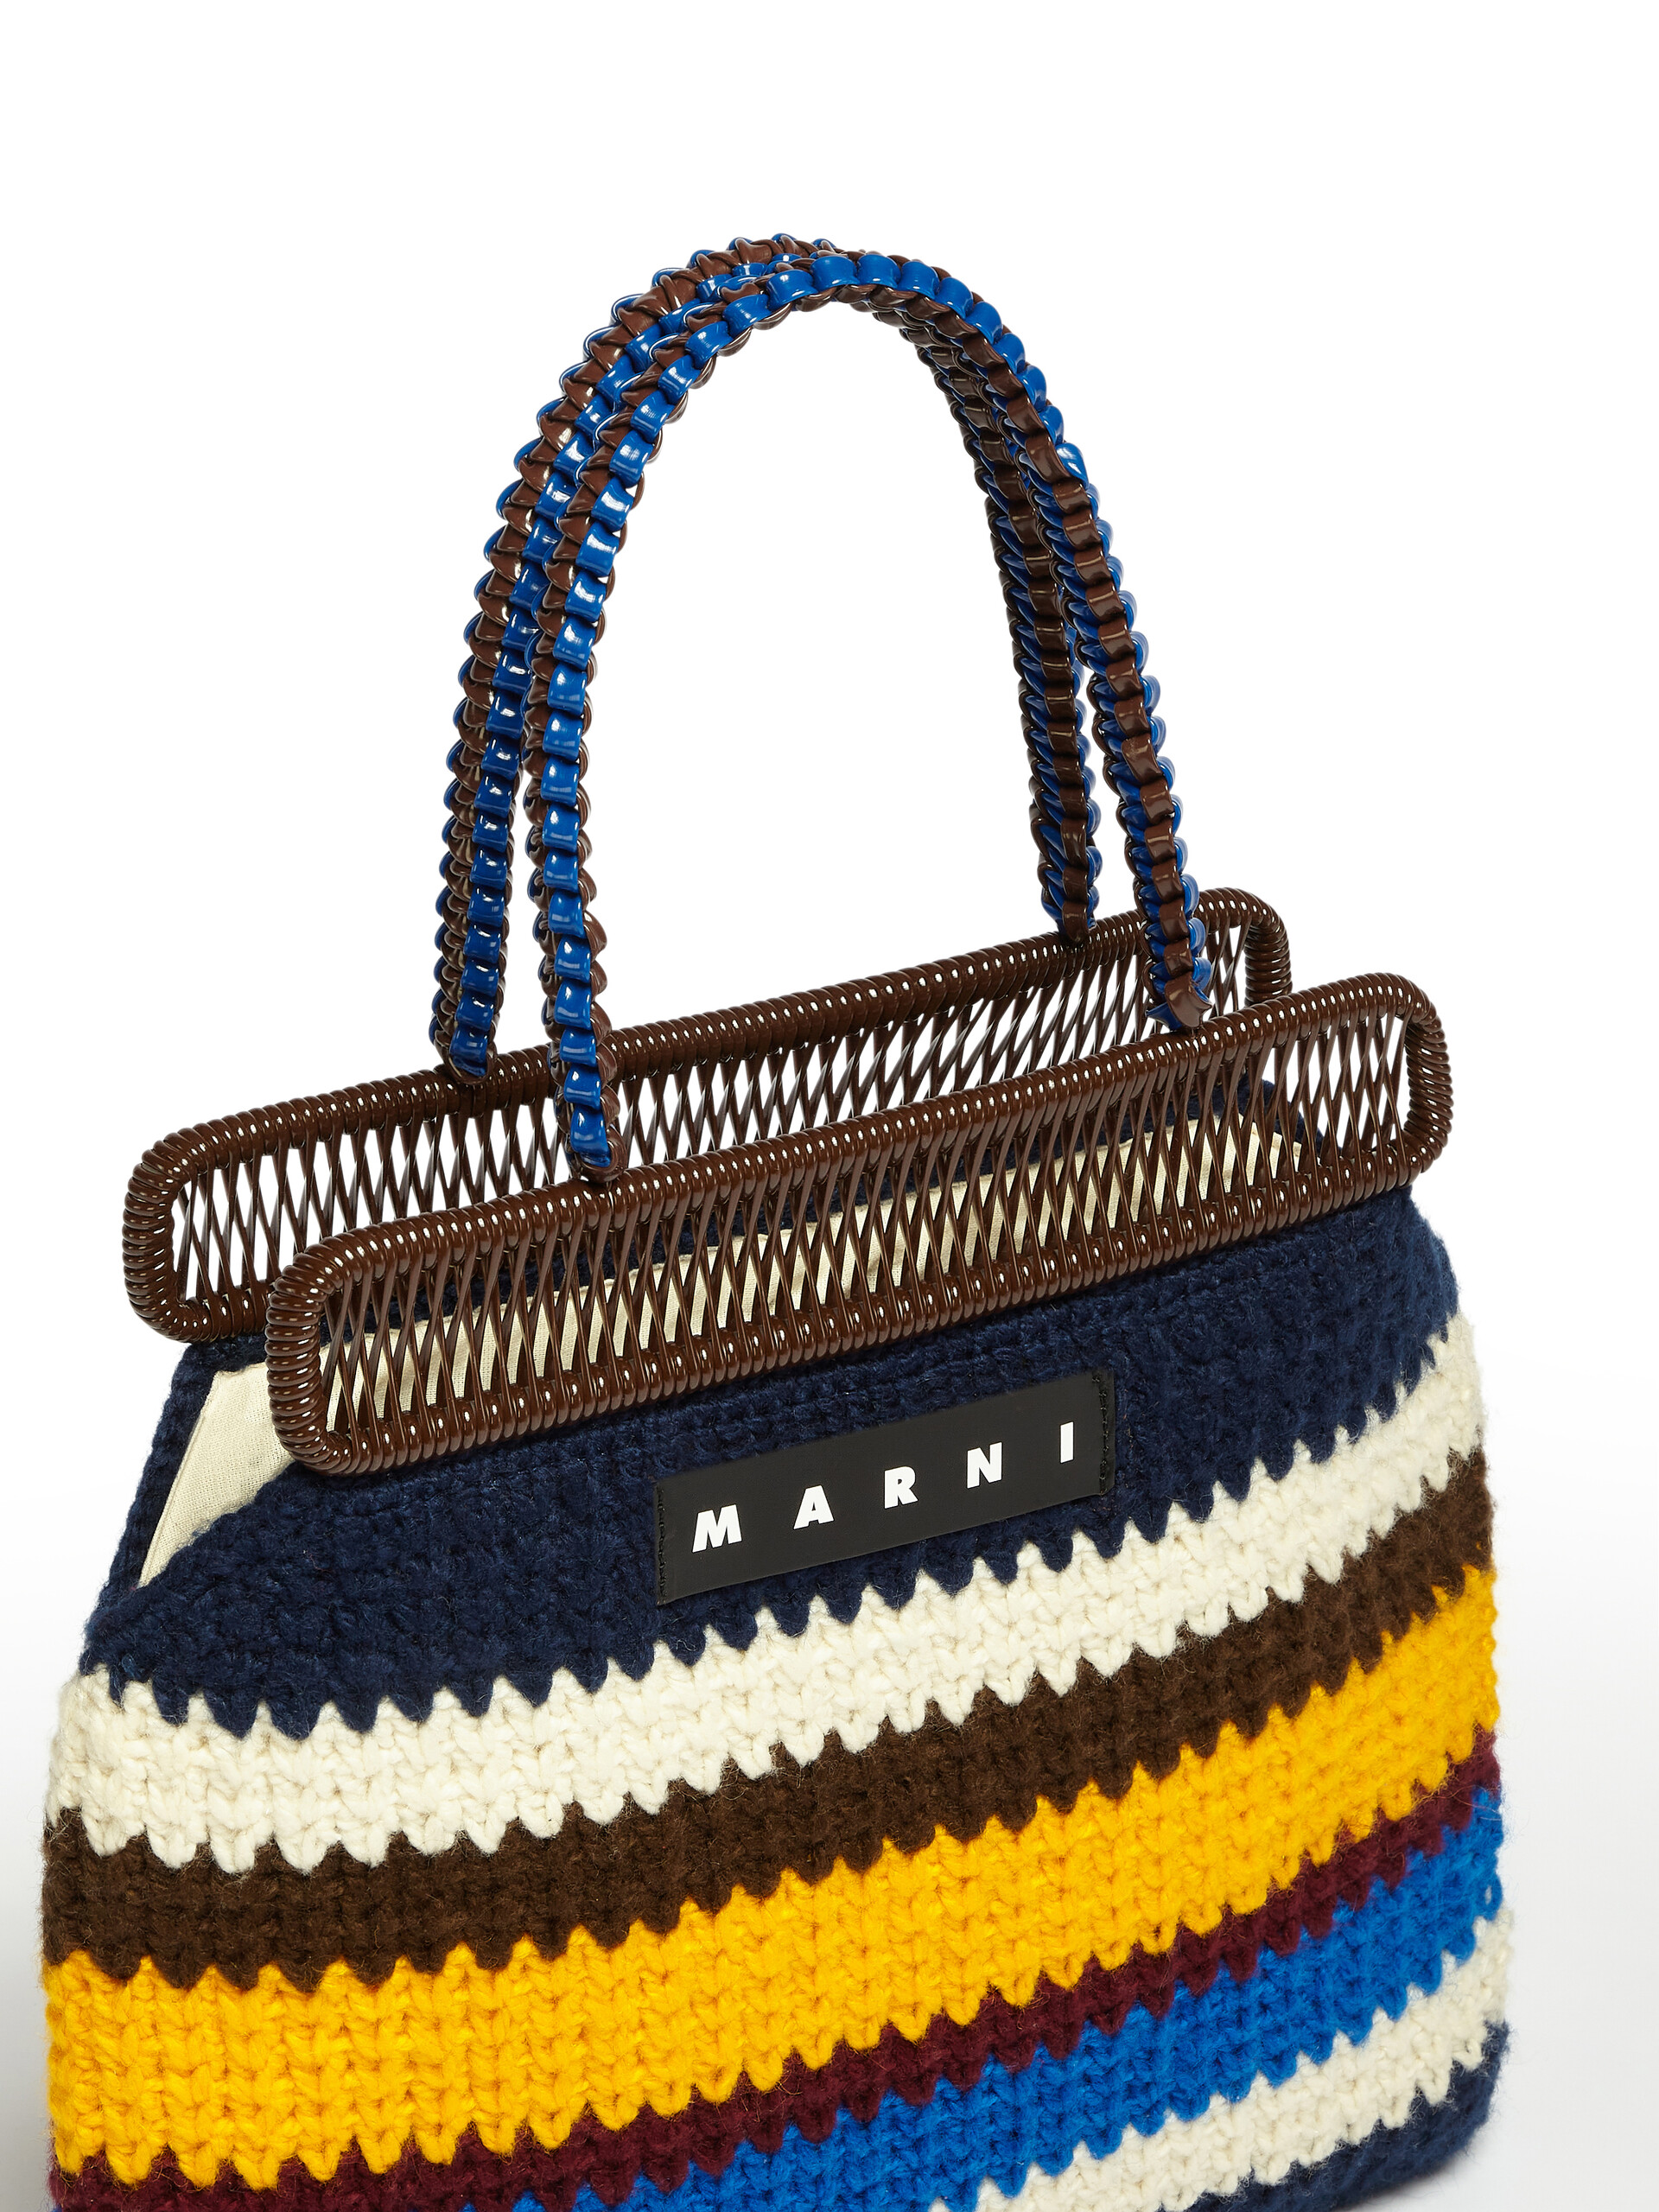 Borsa MARNI MARKET in lana crochet multicolore blu - Arredamento - Image 4